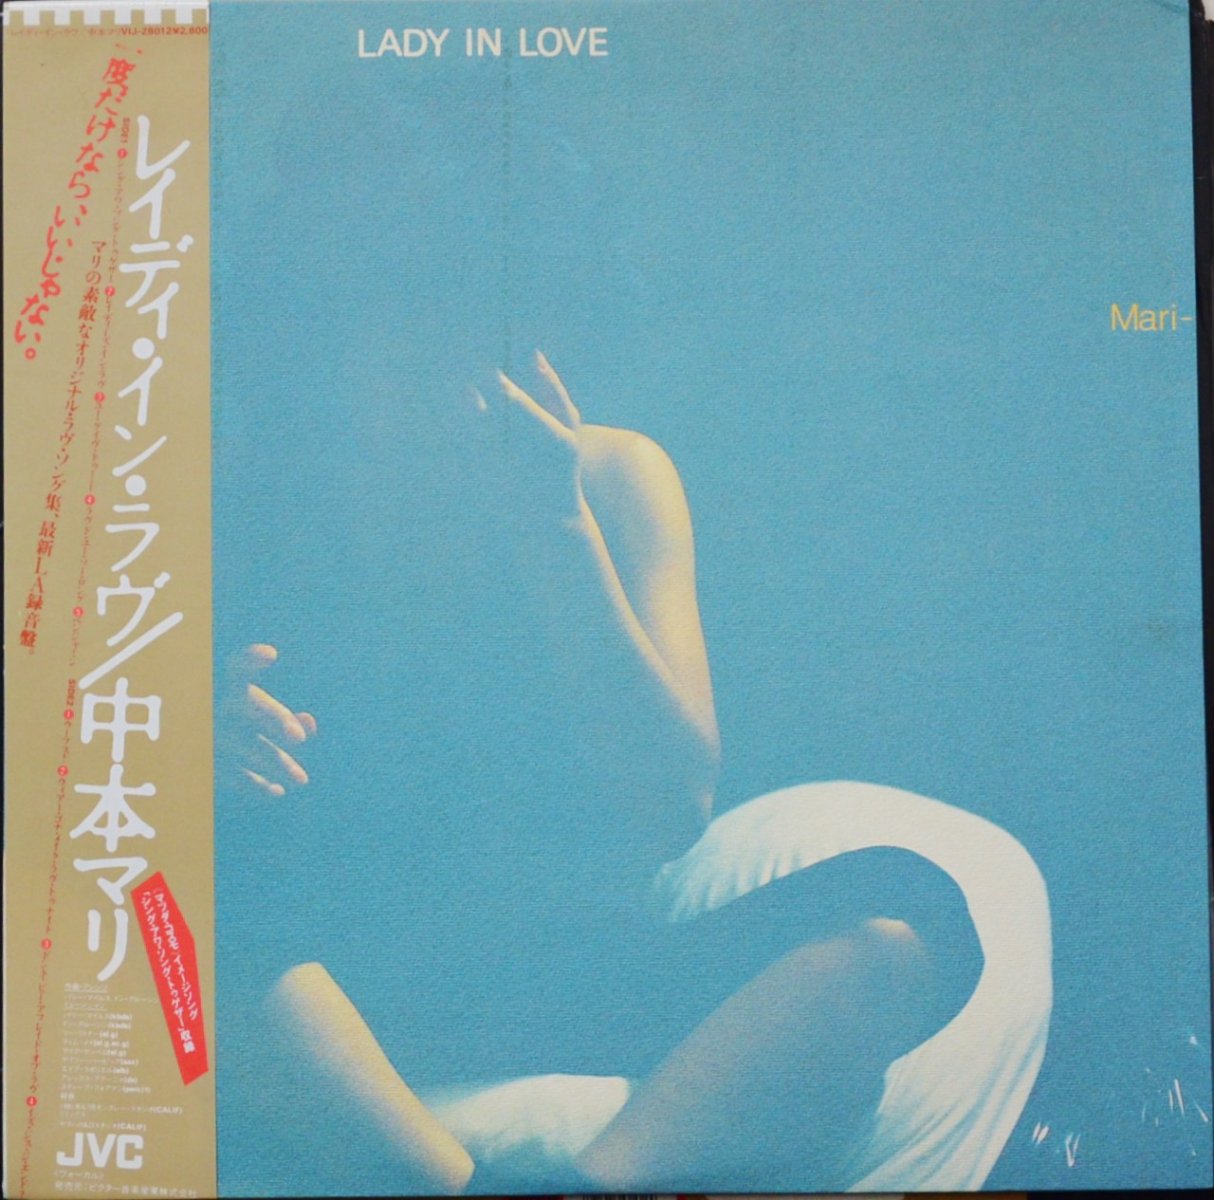 中本マリ MARI NAKAMOTO / レイディ・イン・ラヴ LADY IN LOVE (LP)